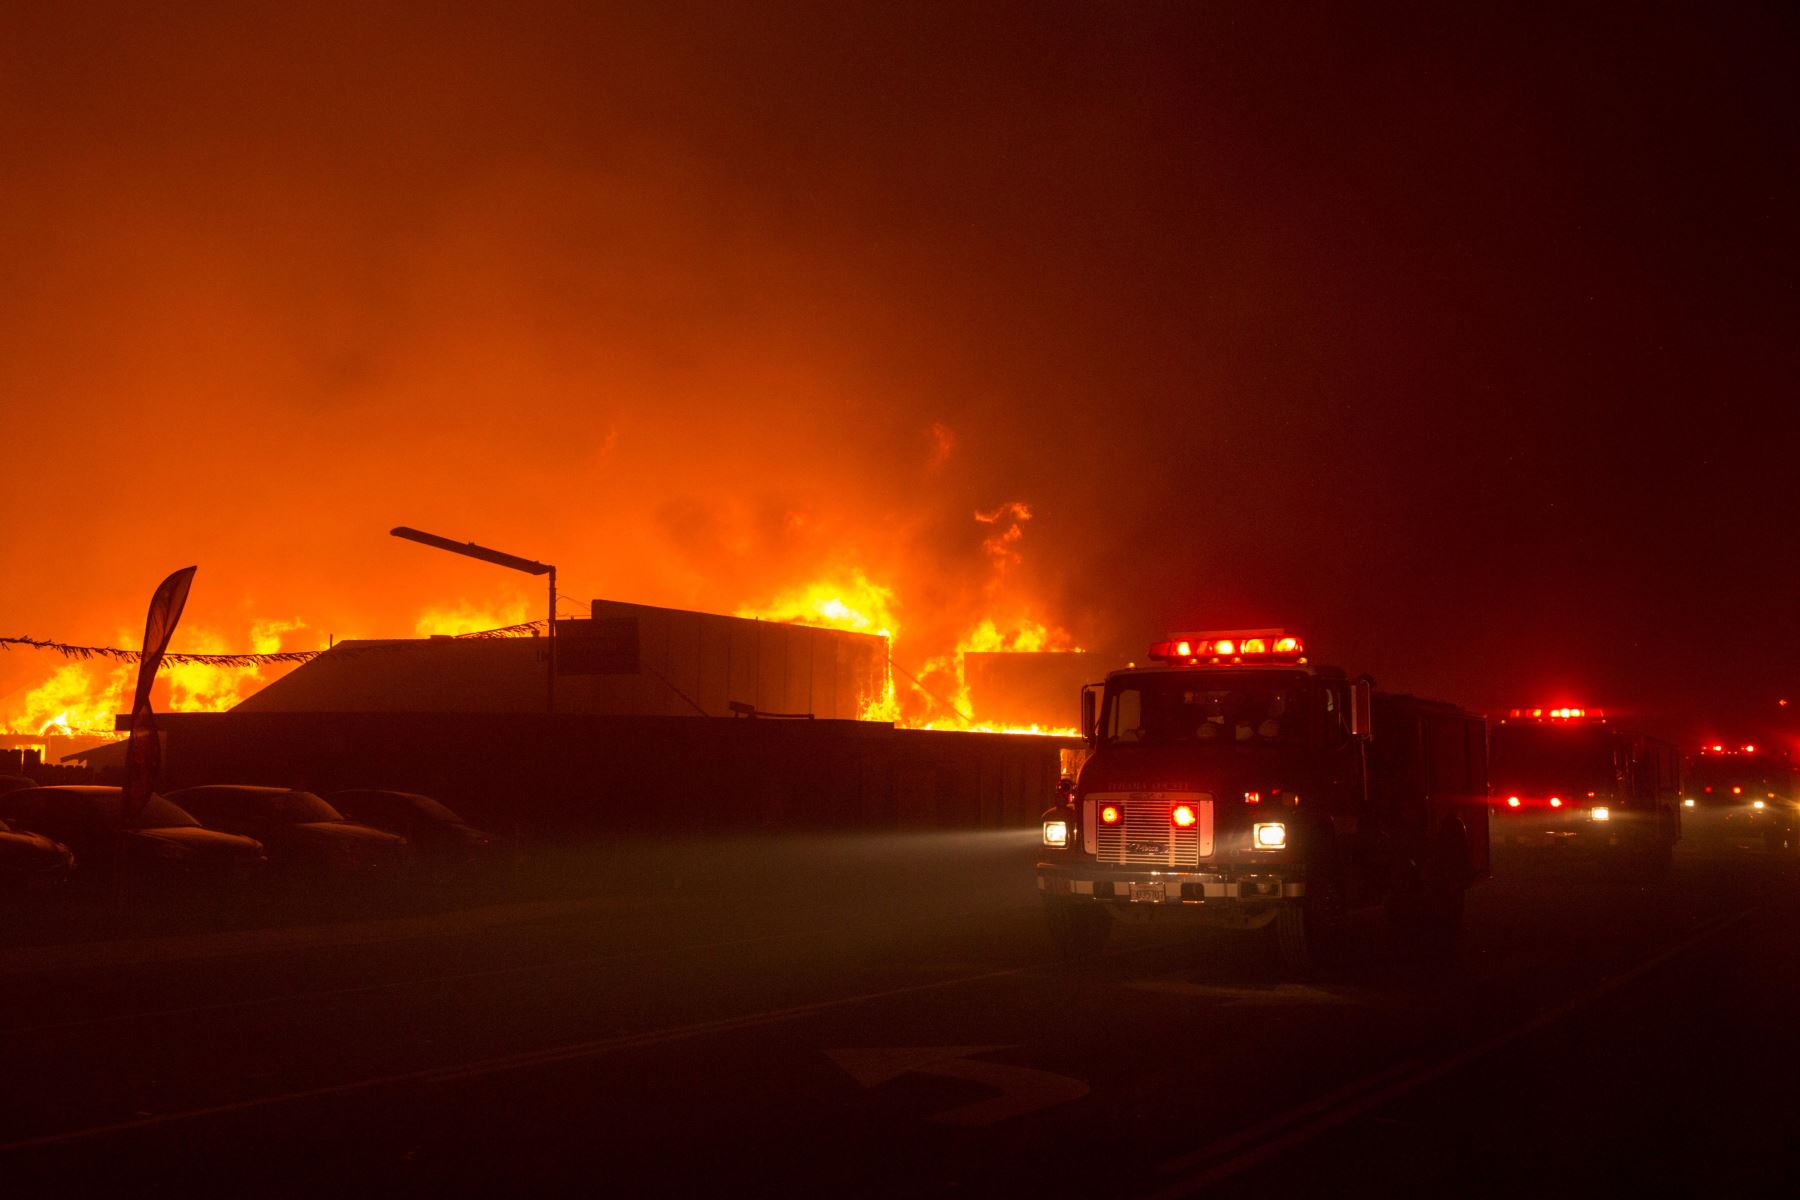 Bomberos intentan apagar el fuego en un edificio hoy, jueves 8 de noviembre de 2018, en el condado de Butte, California (EE. UU.). Se ordenÛ a las comunidades cercanas de Pulga, Paradise y Concow que evacuen la zona.EFE